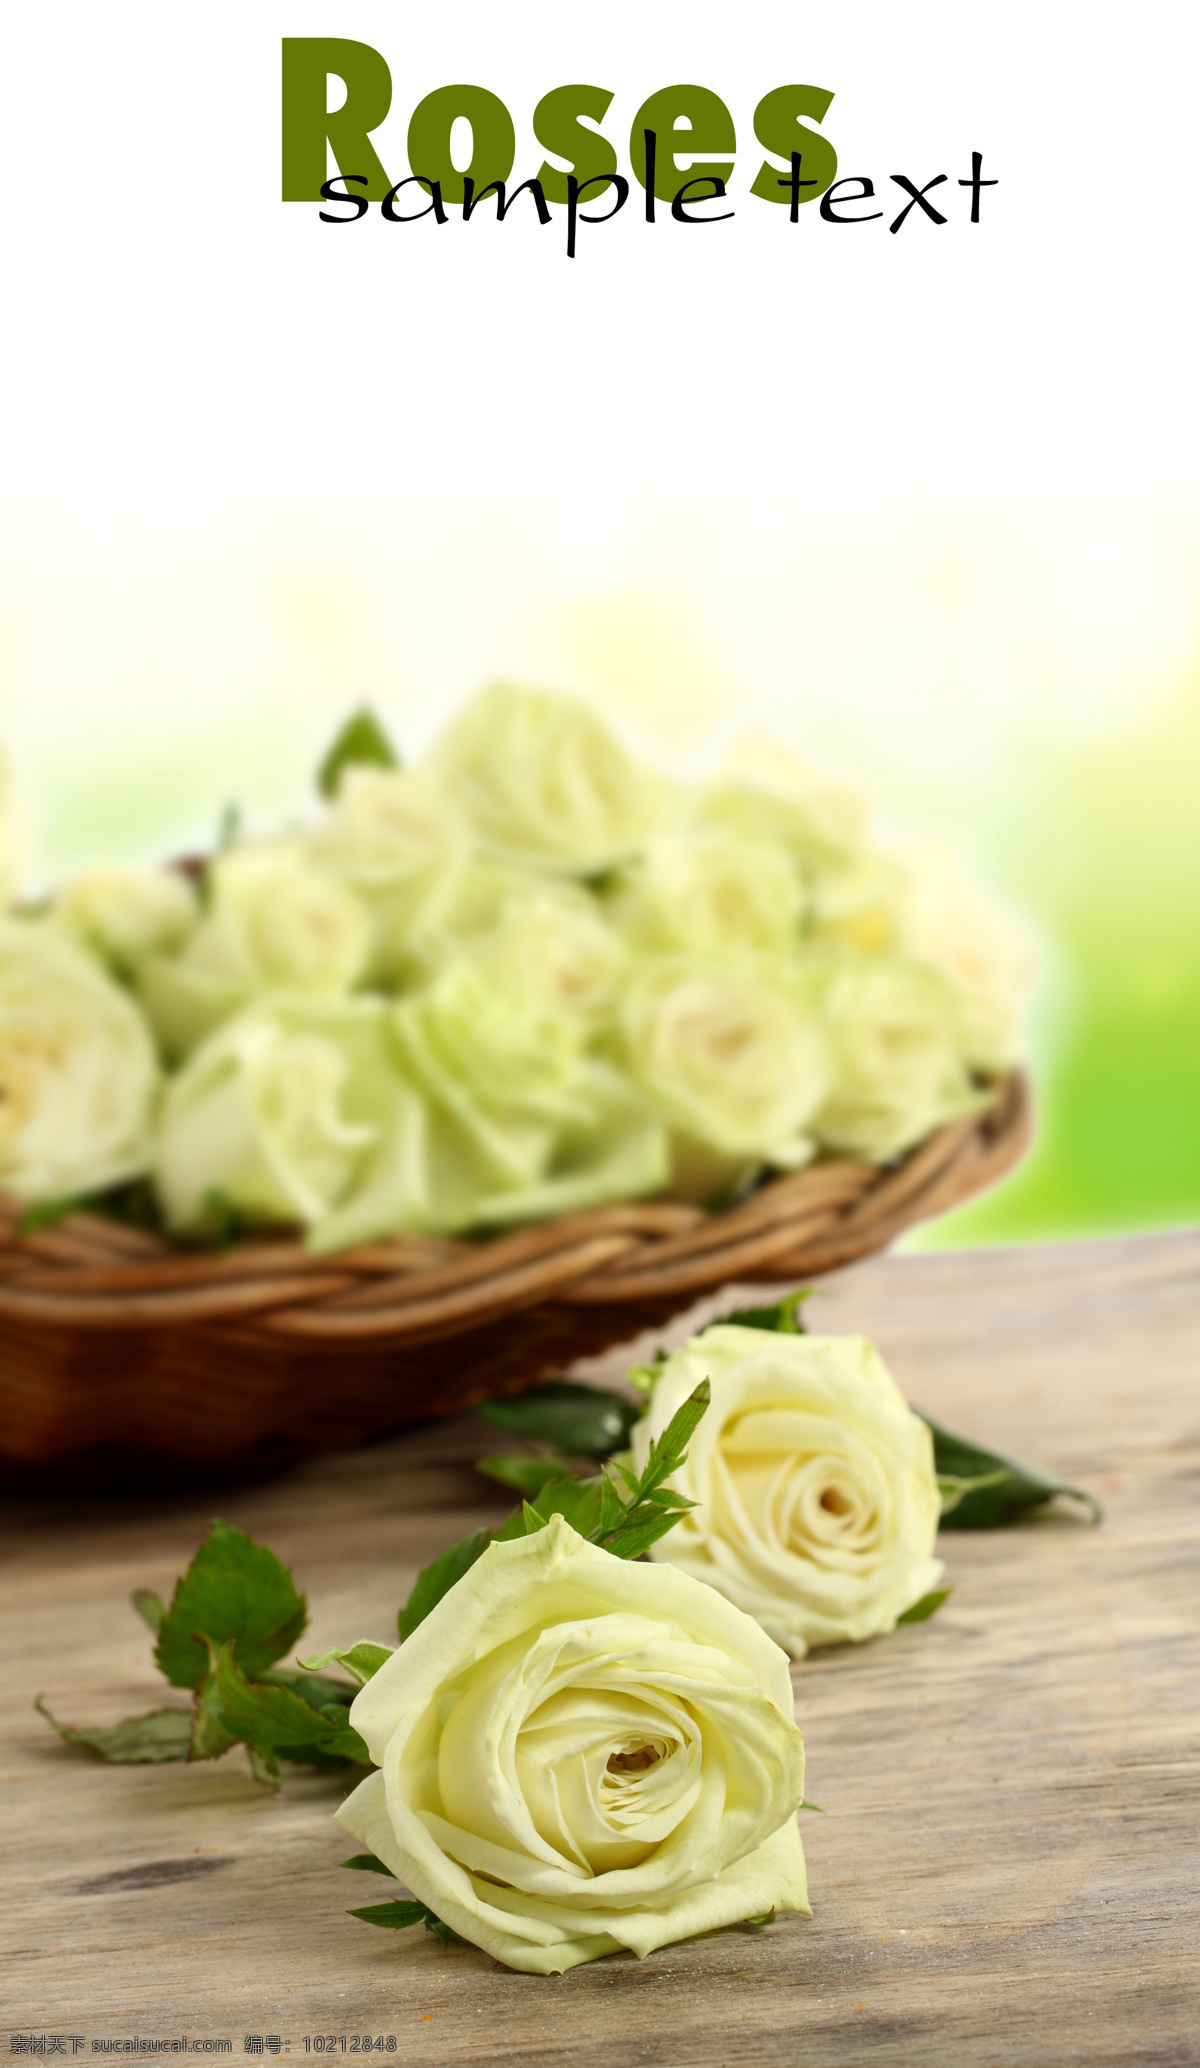 白 玫瑰 植物 鲜花 白玫瑰 浪漫 圣洁 花瓣 纯洁 洁白 花束 花篮 花草树木 生物世界